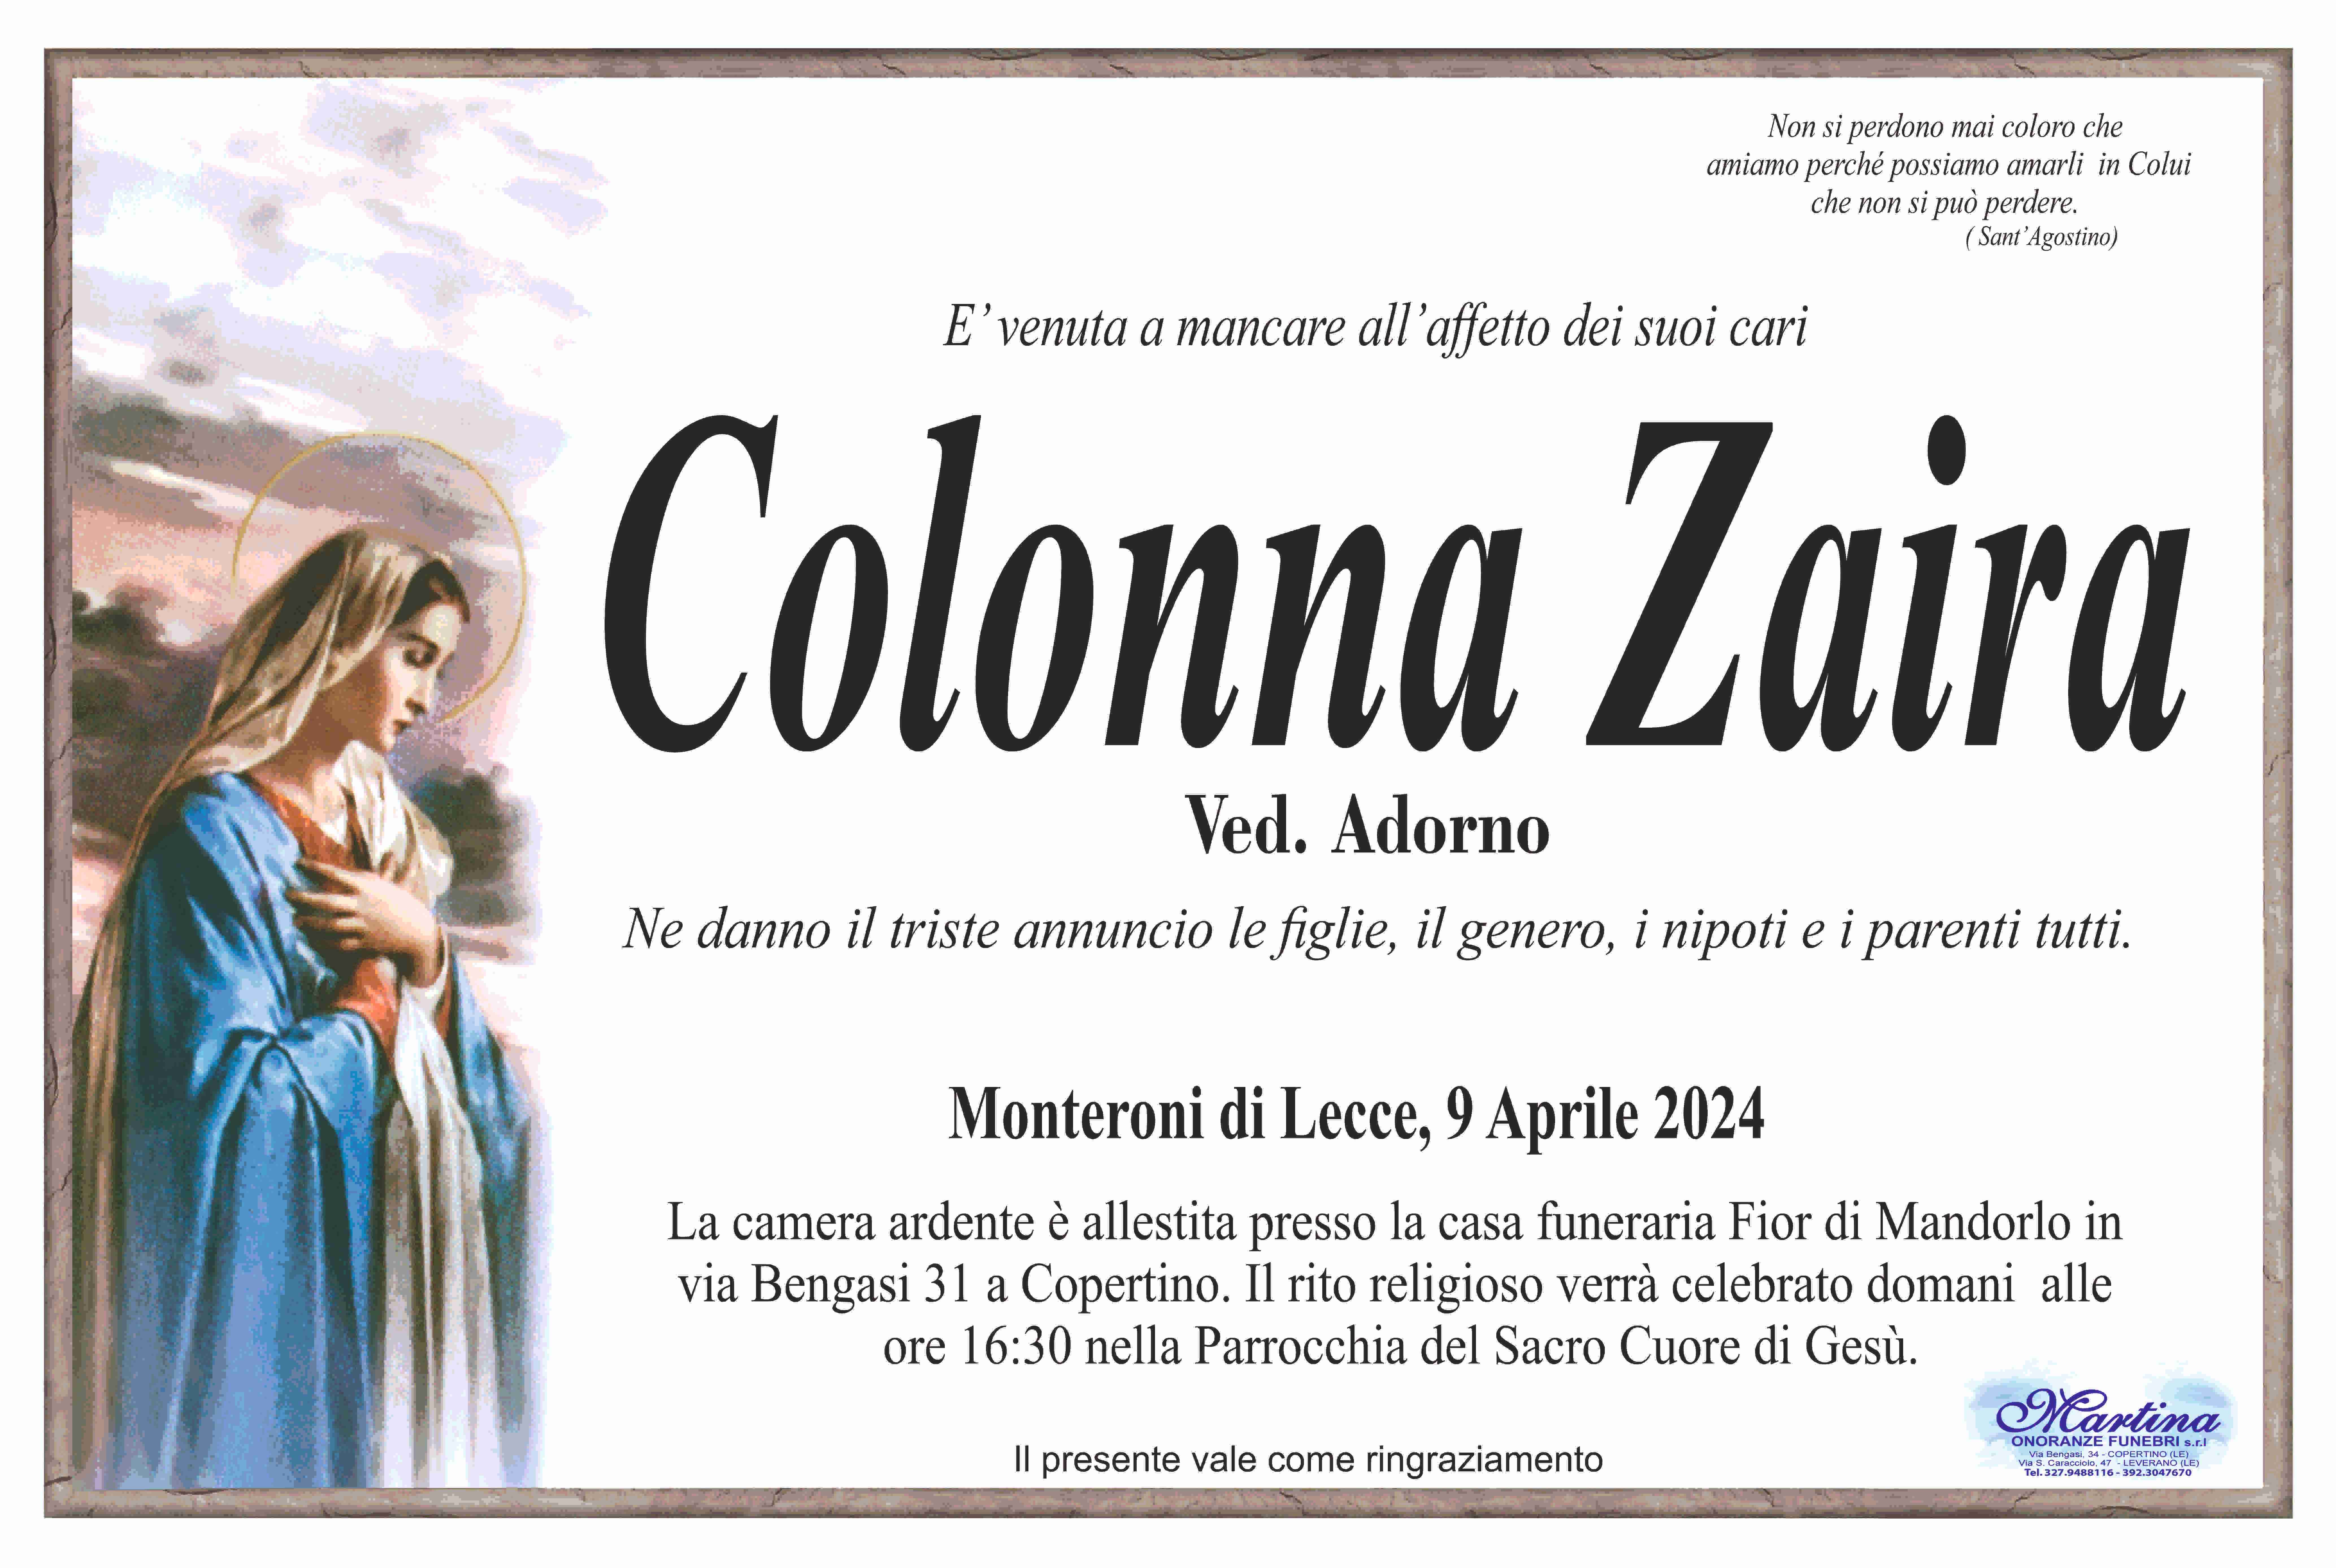 Zaira Colonna